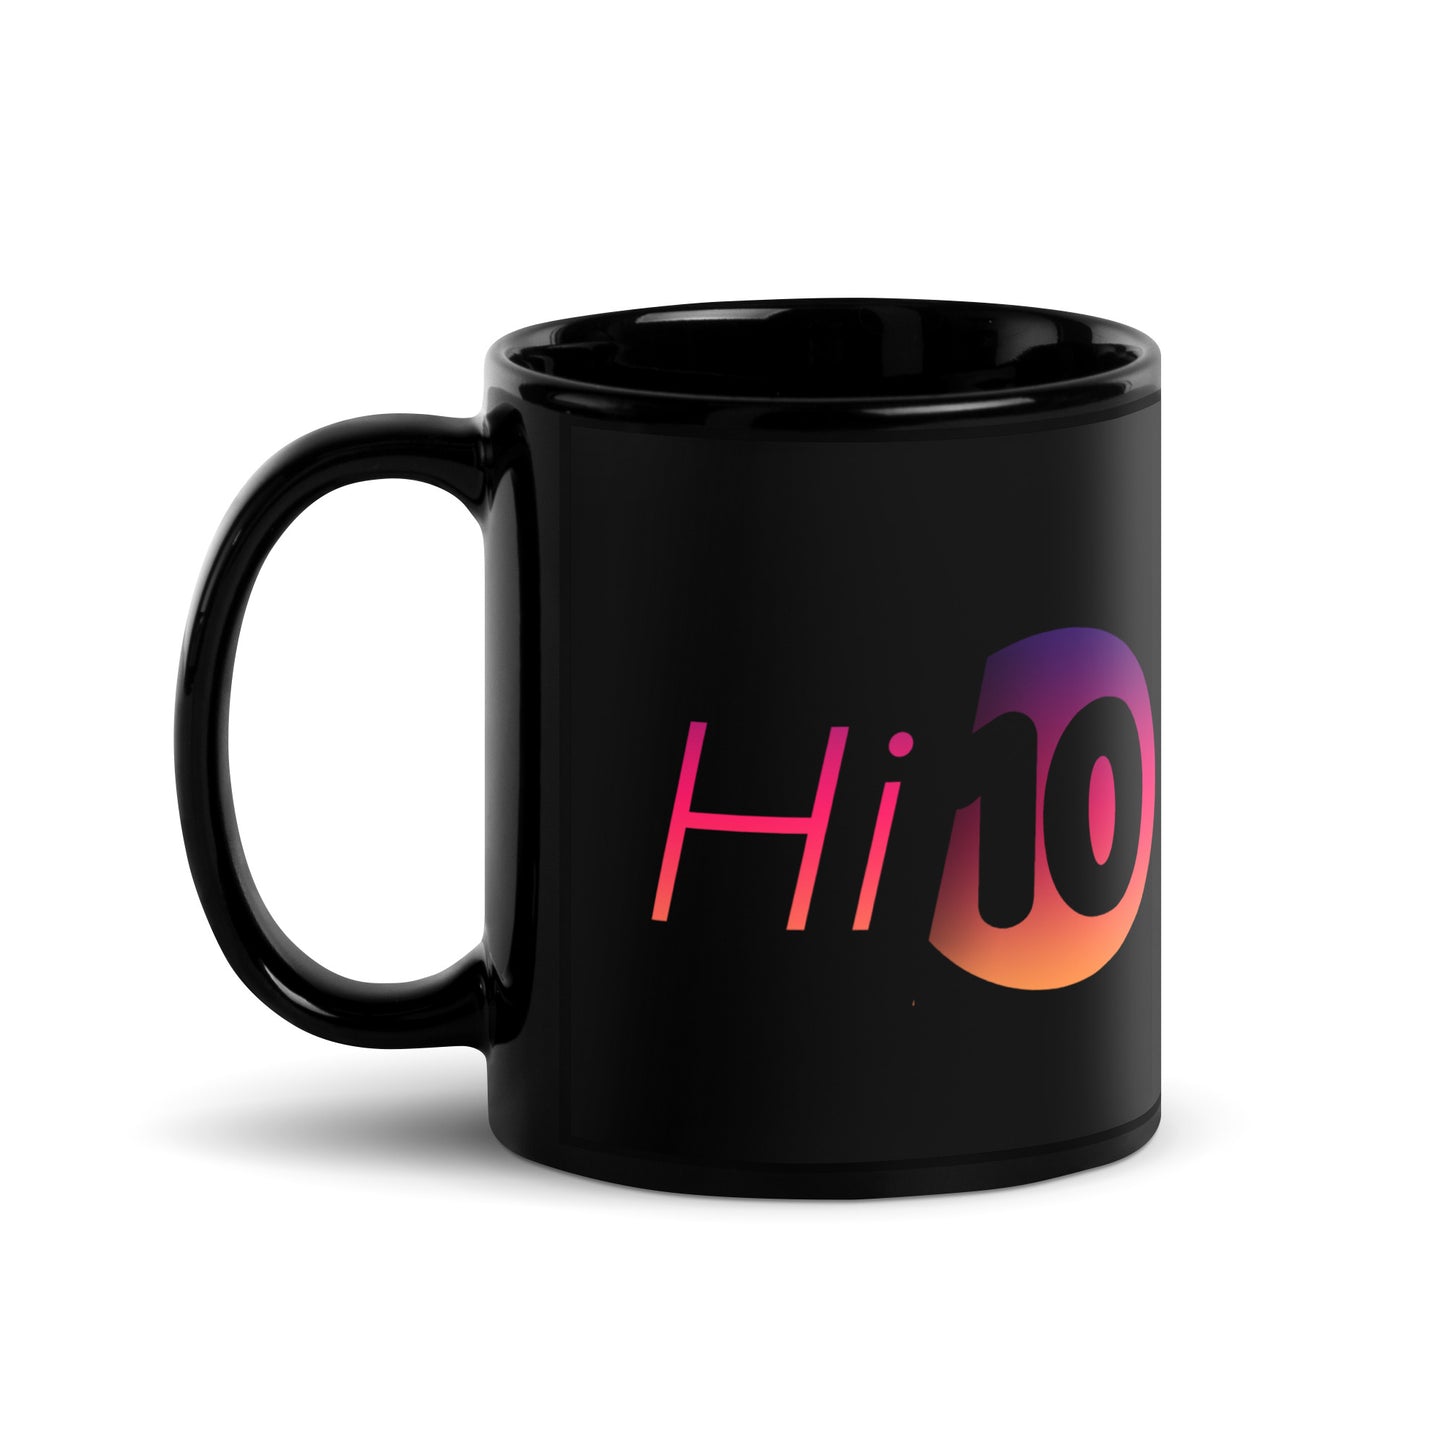 Hi10 Black Glossy Mug